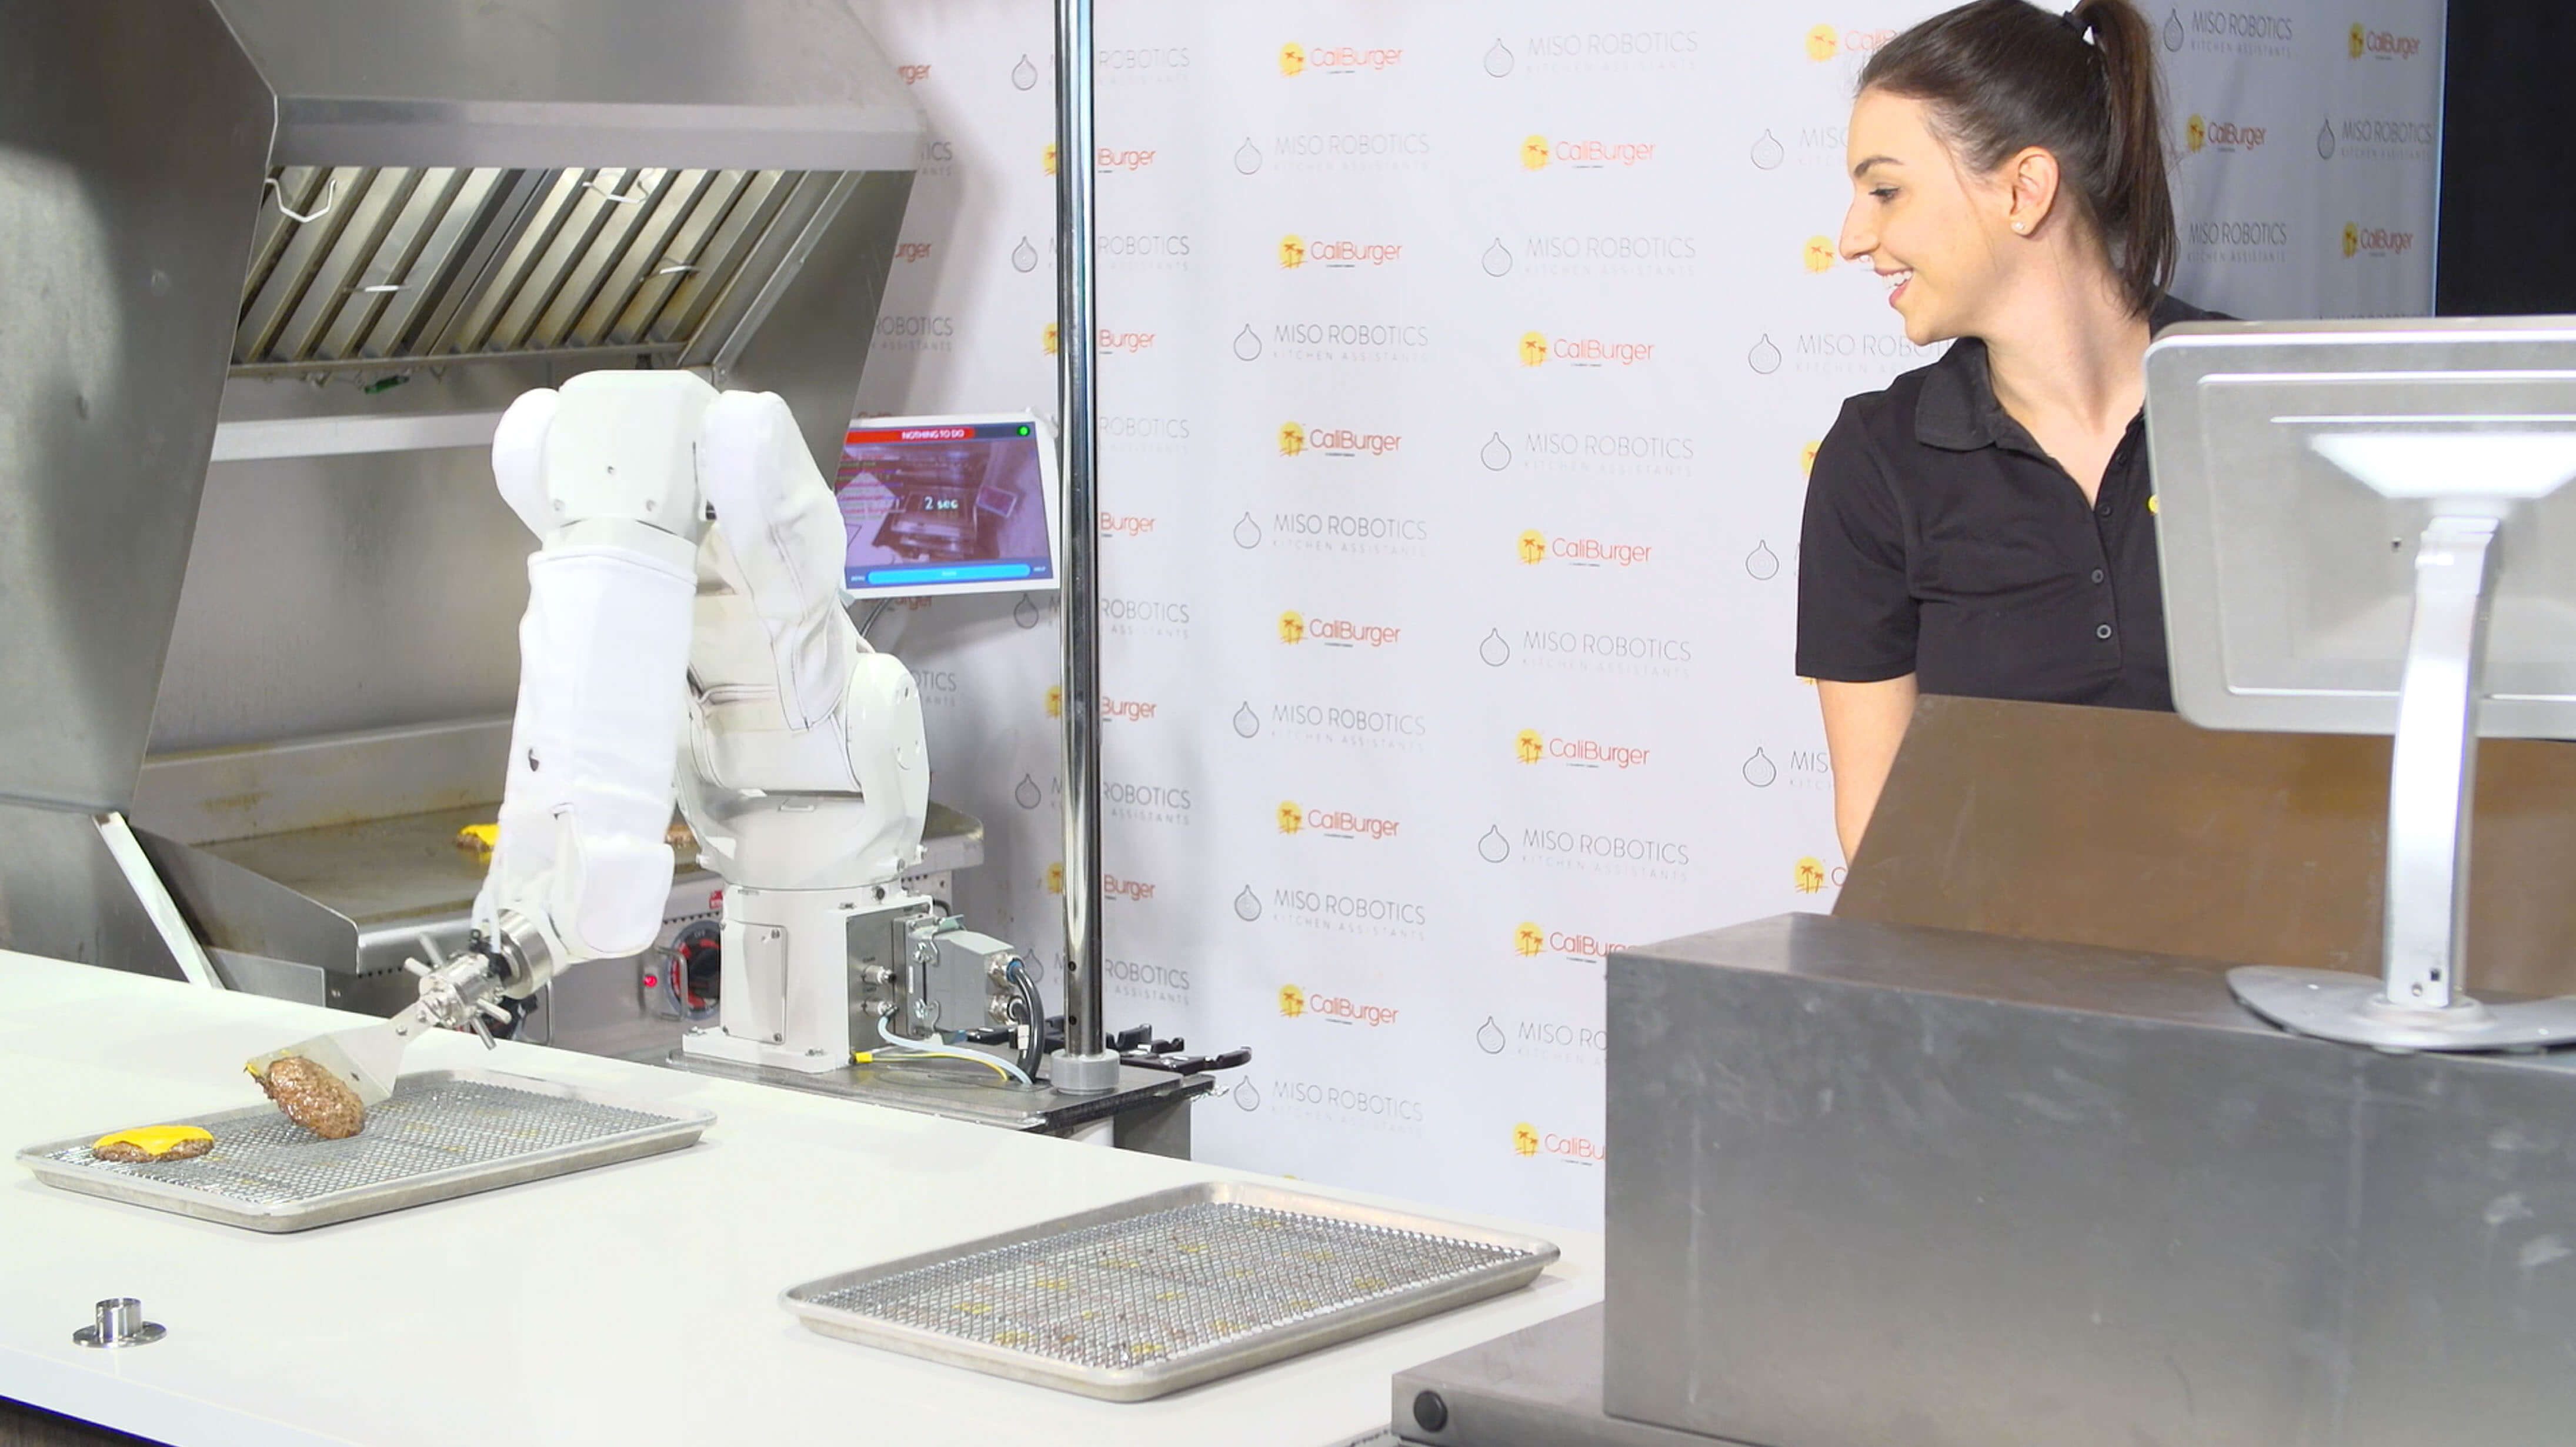 Flippy autonomous robotic kitchen assistant by Miso Robotics